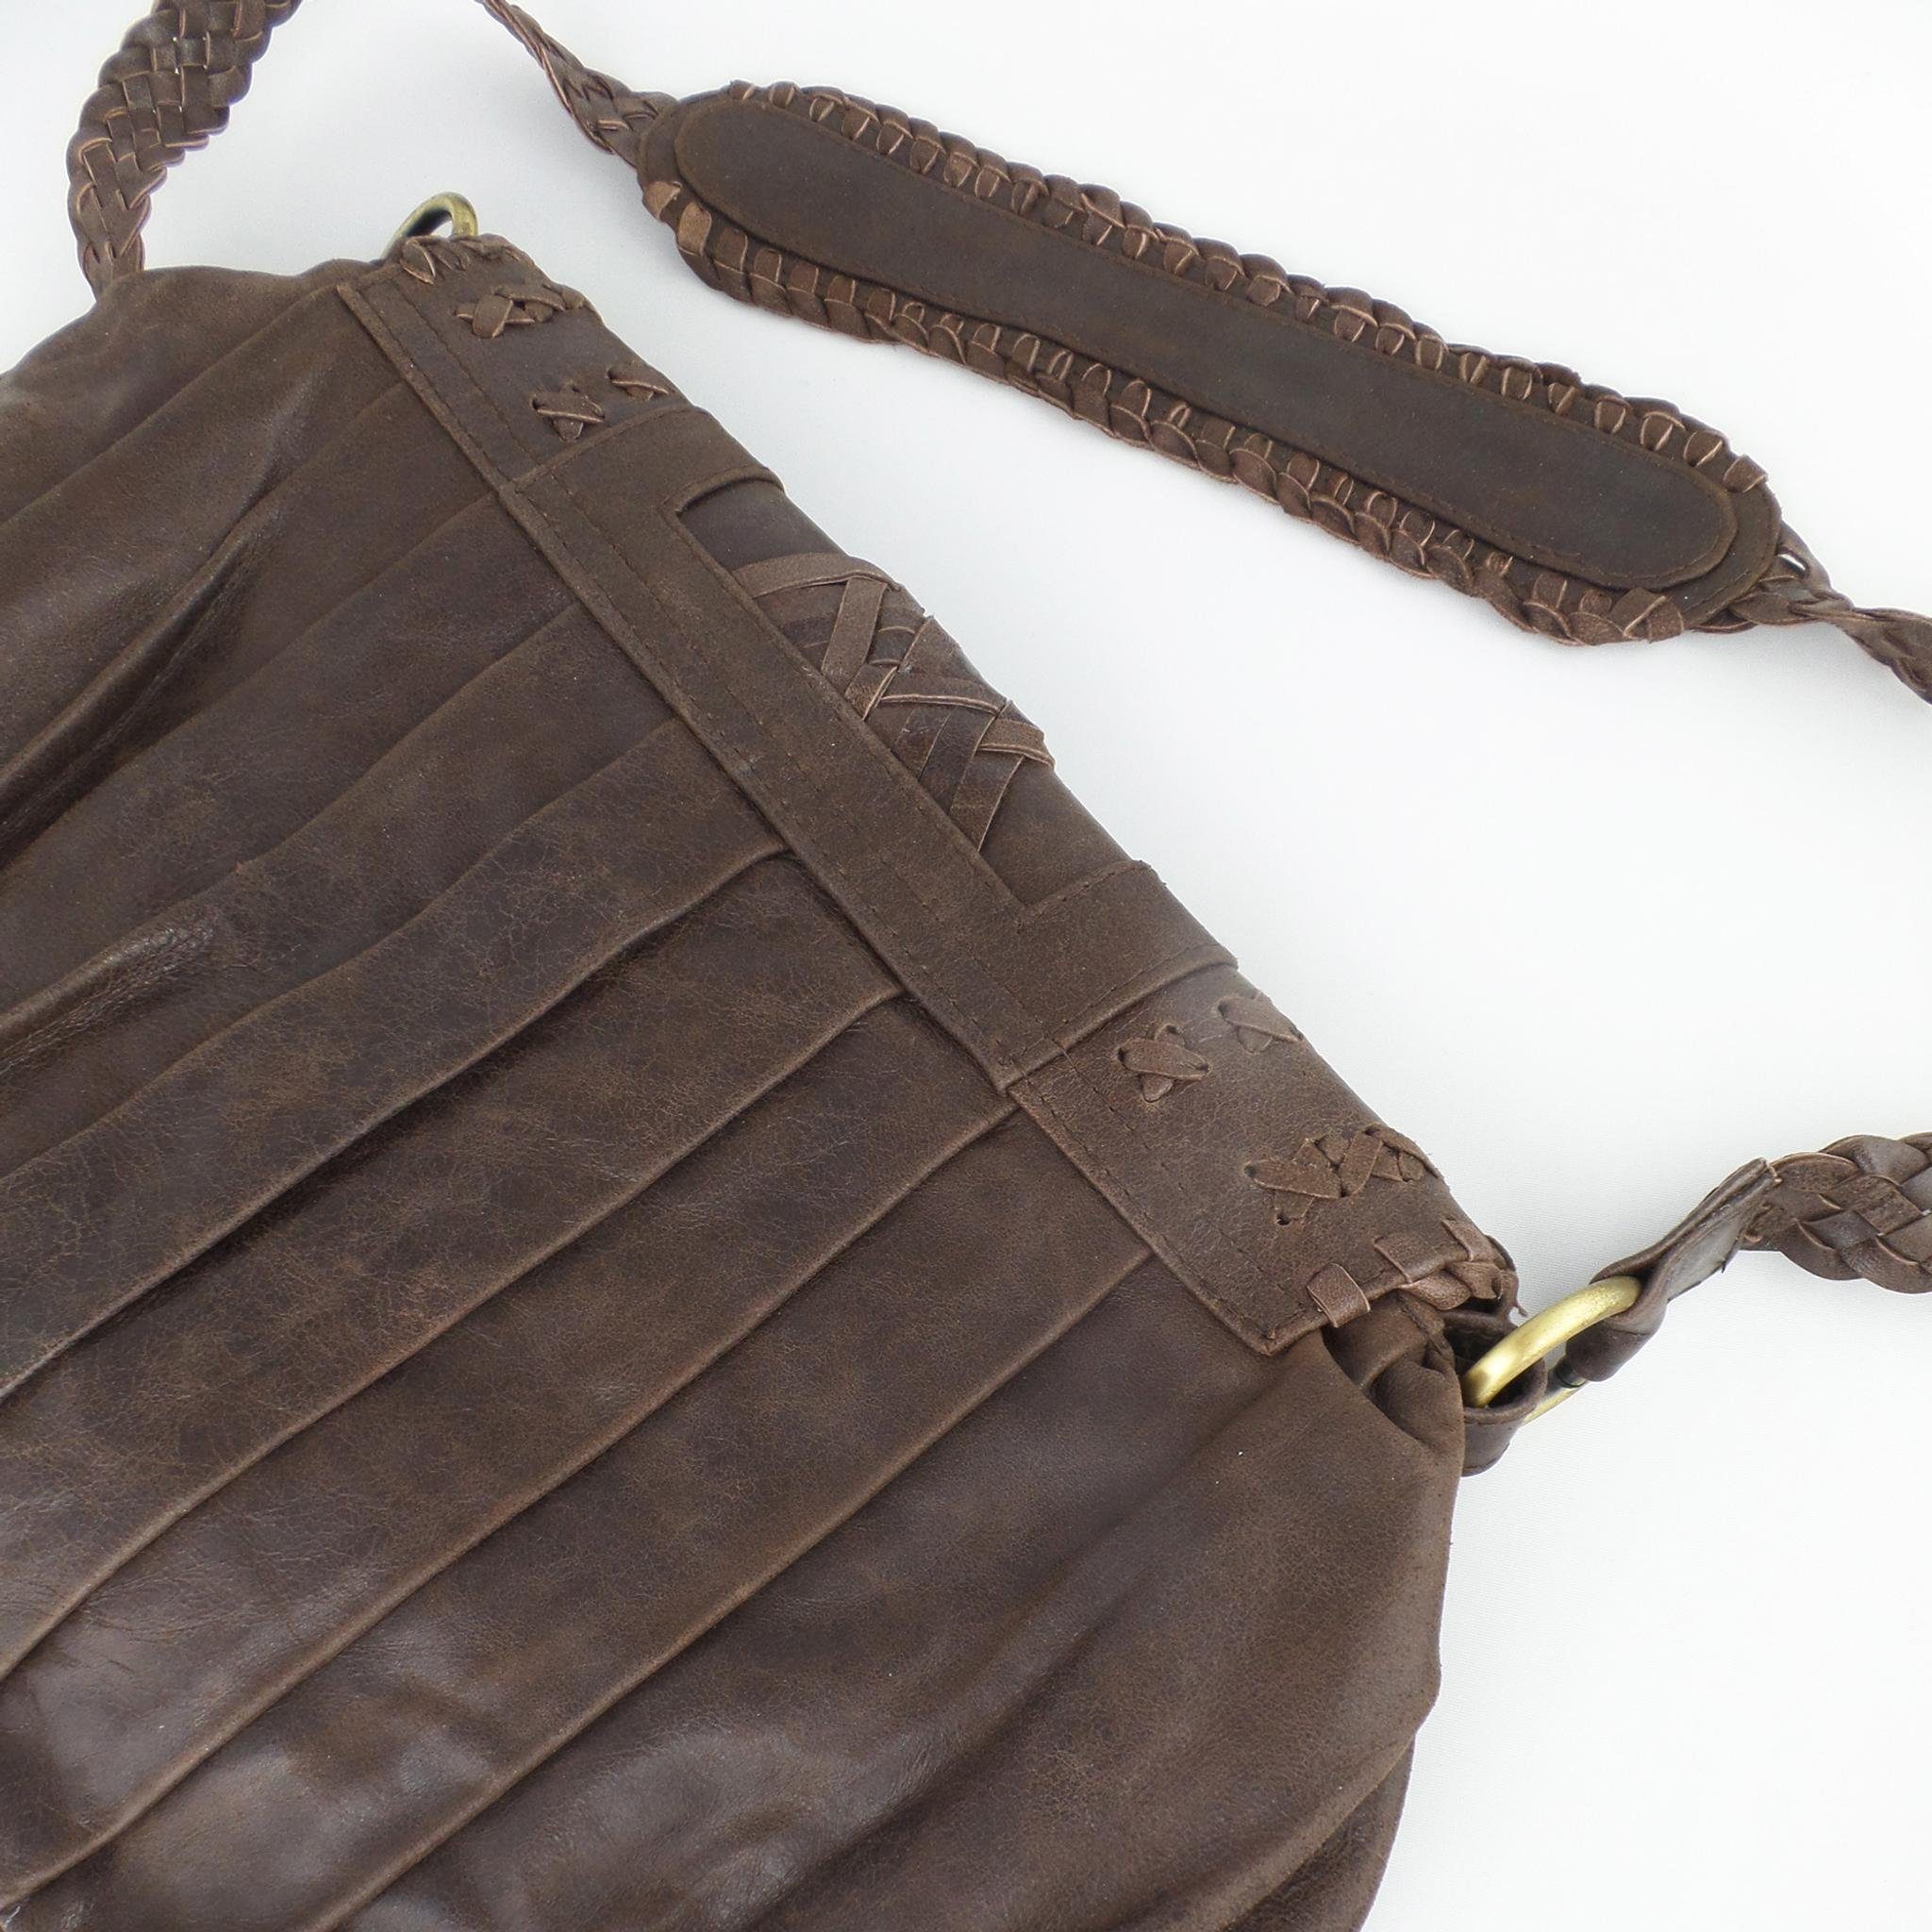 Design Vintage Handtasche goldmarie CHARLY Flechtmuster Leder Tasche braun, Lamellen Look im und